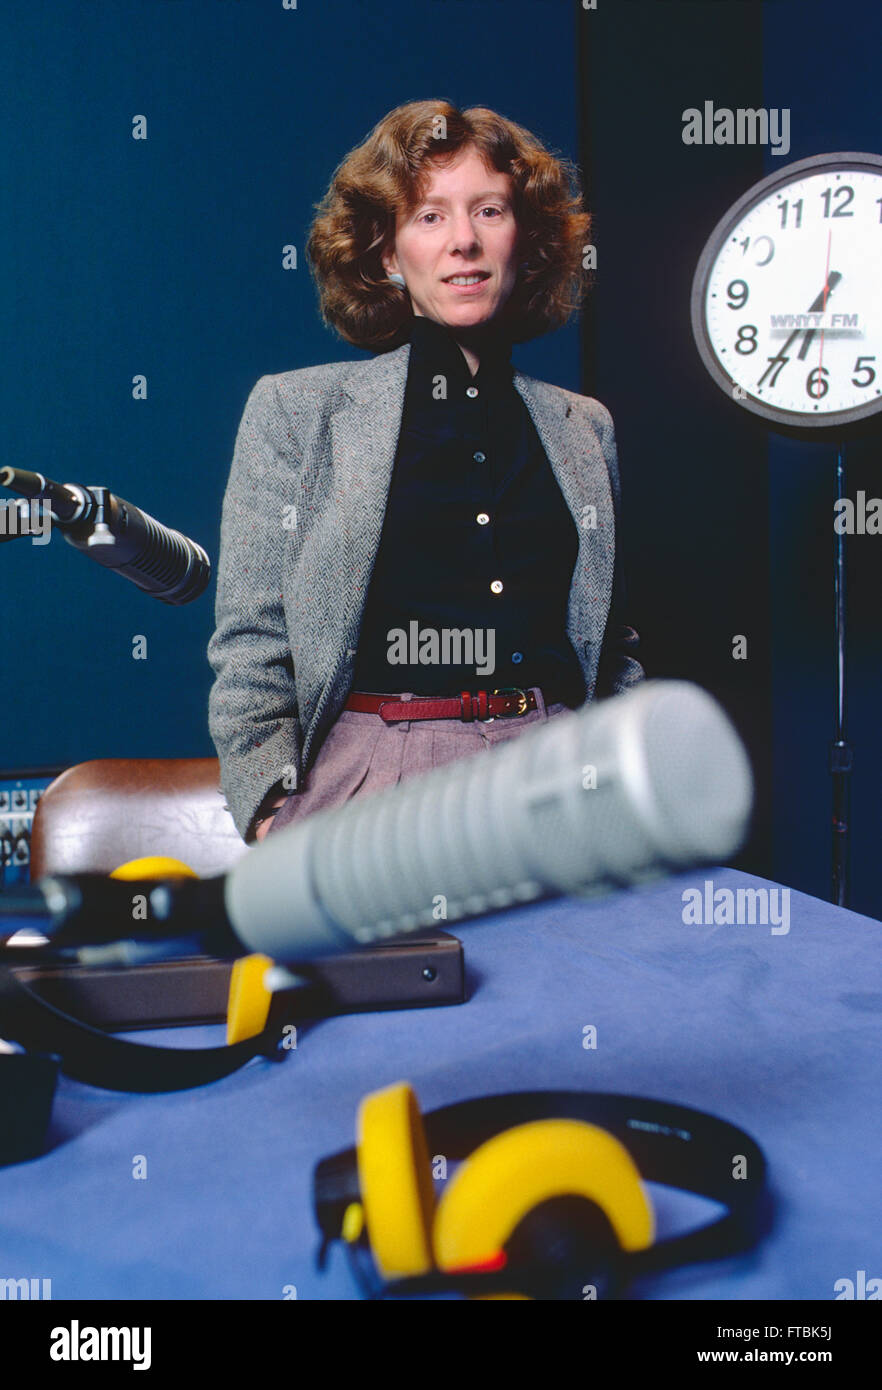 Ritratto di Terry Gross, ospite della radio pubblica nazionale 'aria fresca"; WHYY FM studio; Philadelphia, Pennsylvania, STATI UNITI D'AMERICA Foto Stock